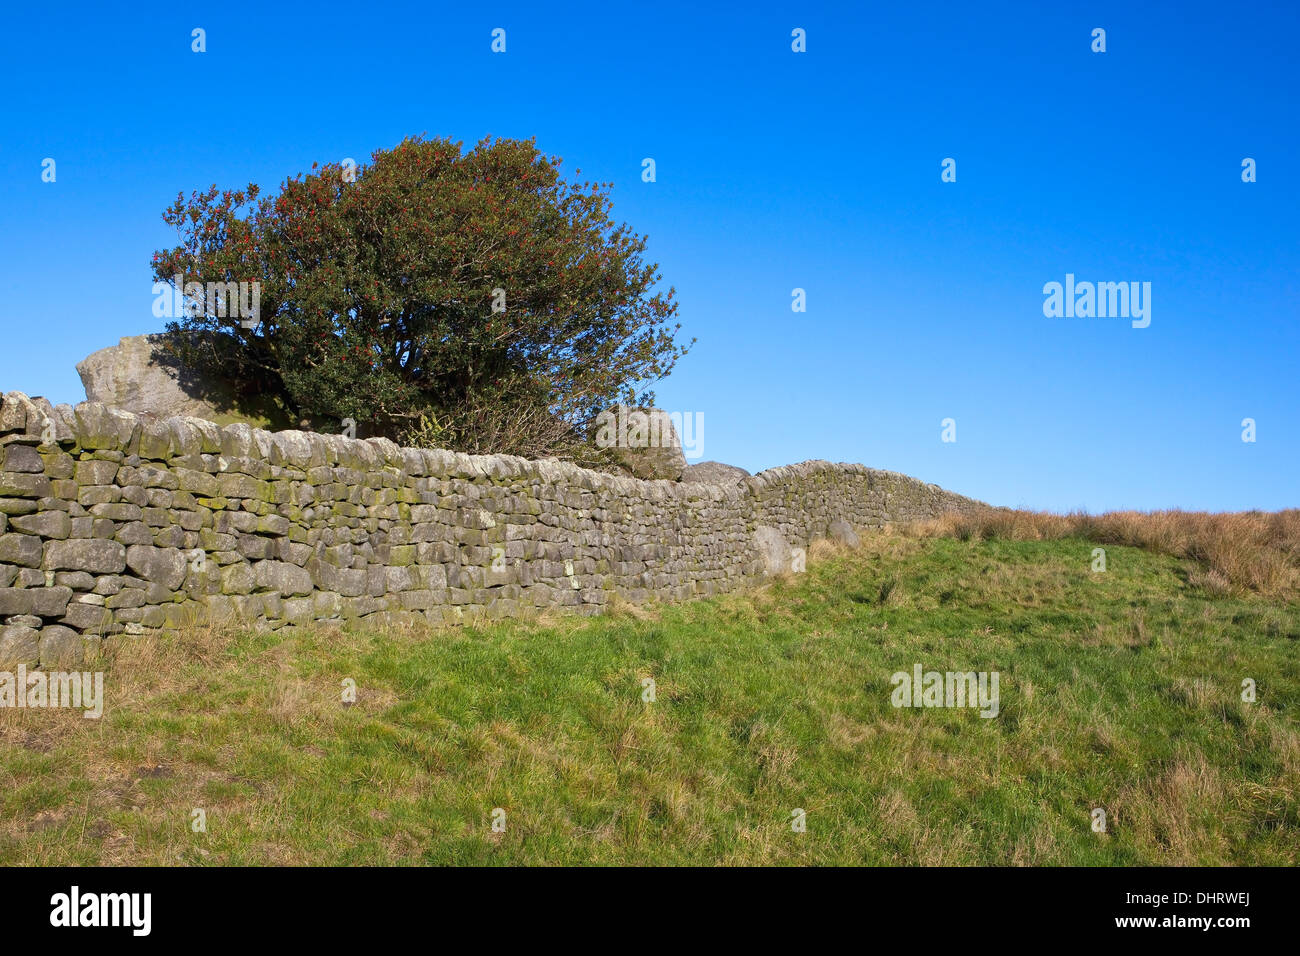 Paesaggio inglese con una bacca laden Holly Tree e muri in pietra a secco da un prato erboso nel Yorkshire Dales in novembre Foto Stock